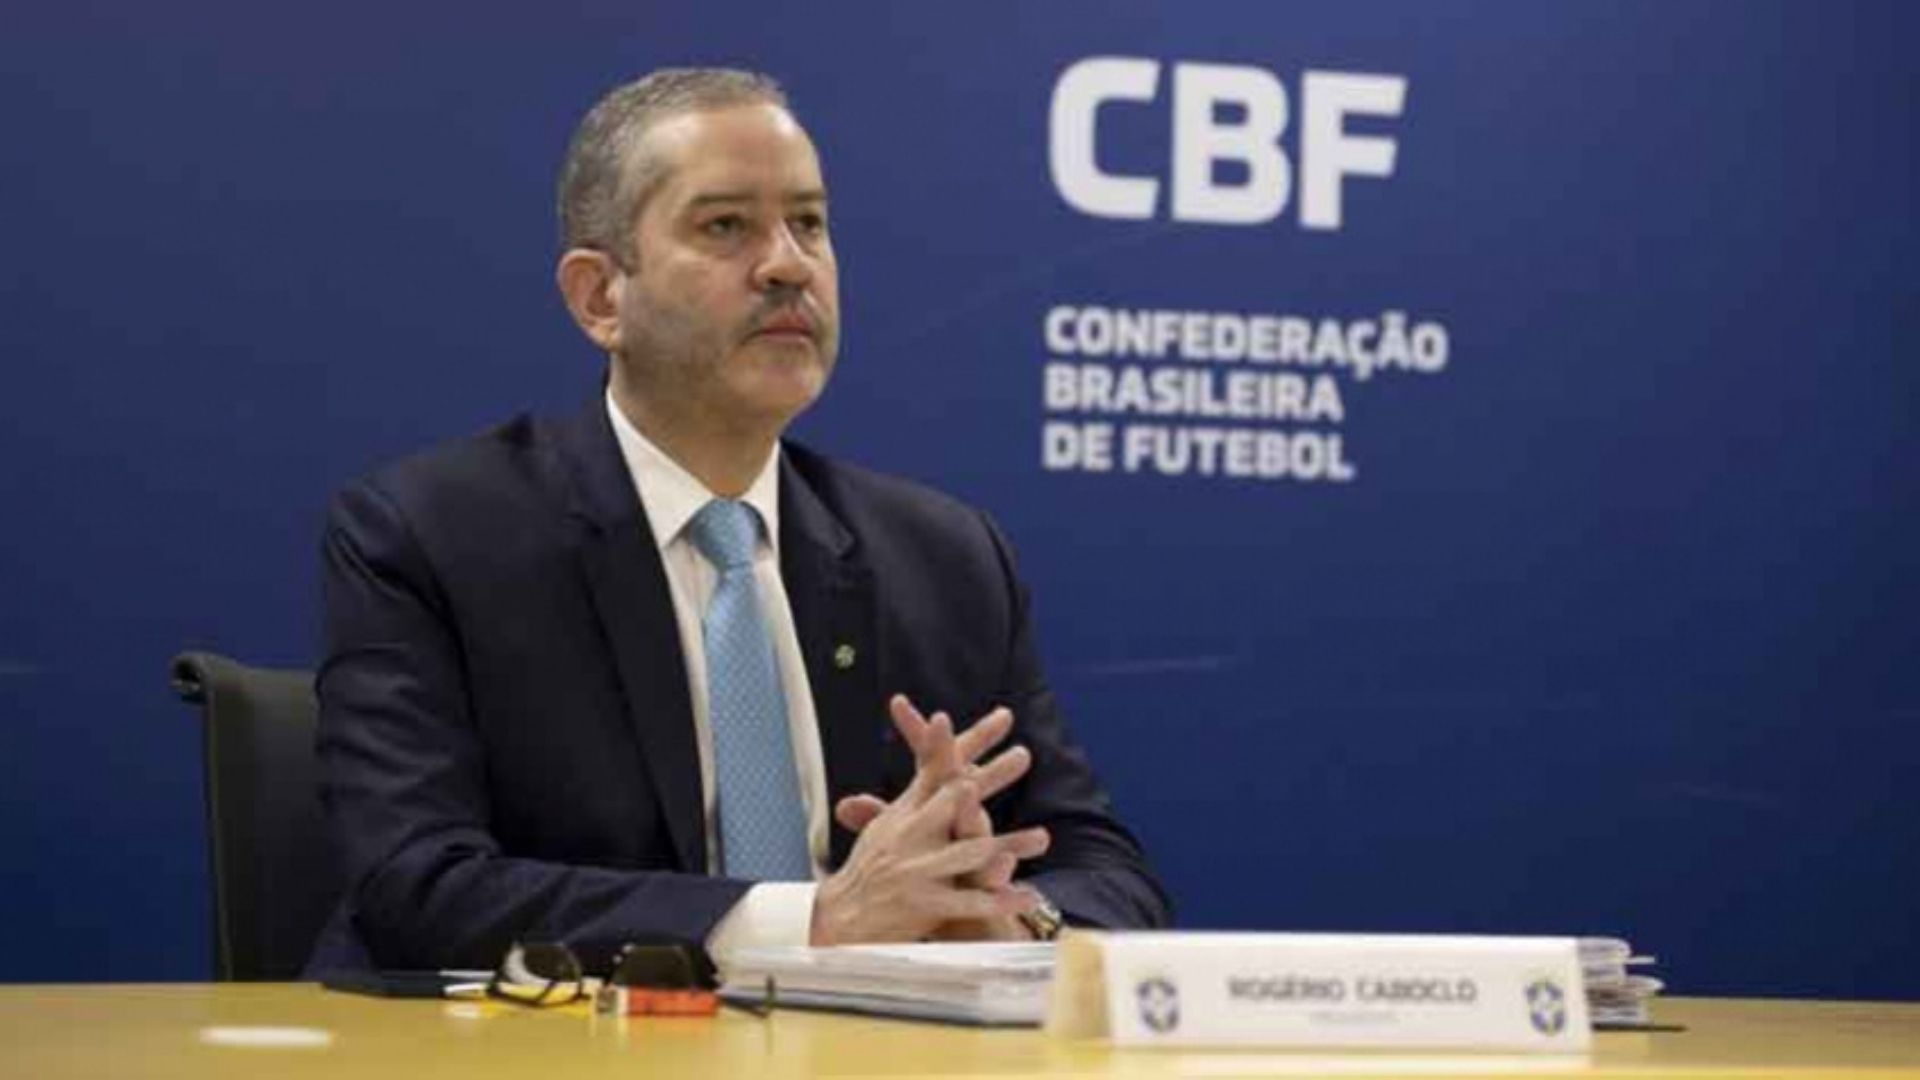 Rogério Caboclo, presidente da CBF